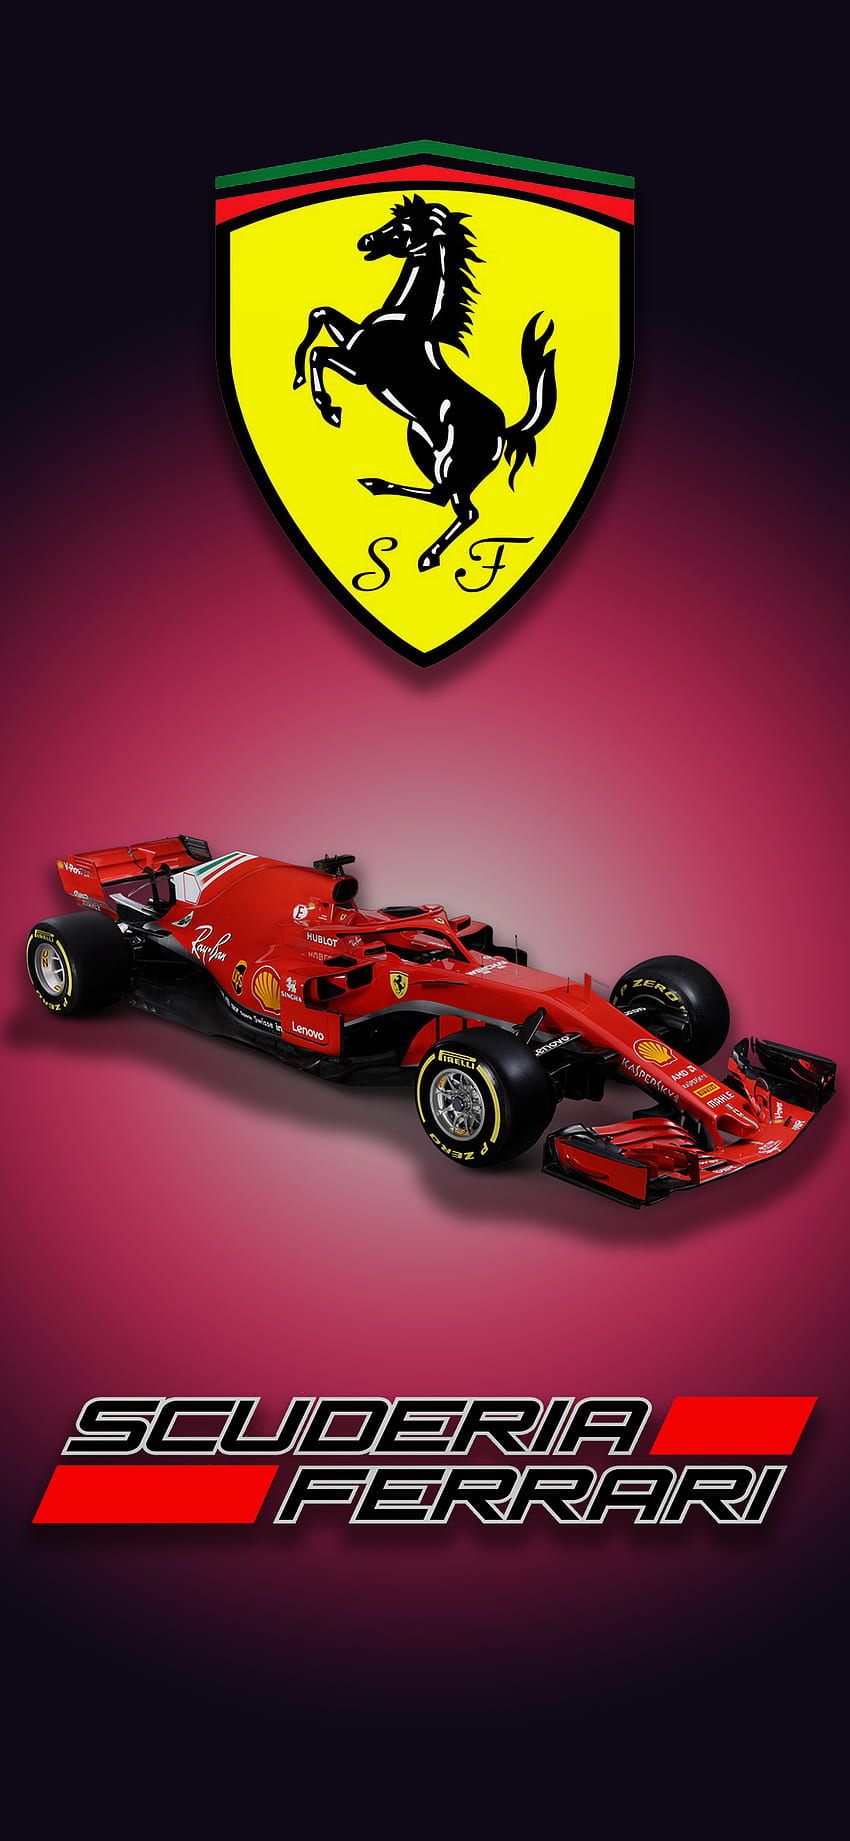 Scuderia Ferrari F1, formula one, red, formula one tyres, racing, scuderia ferrari, formula 1, formula, italy HD phone wallpaper